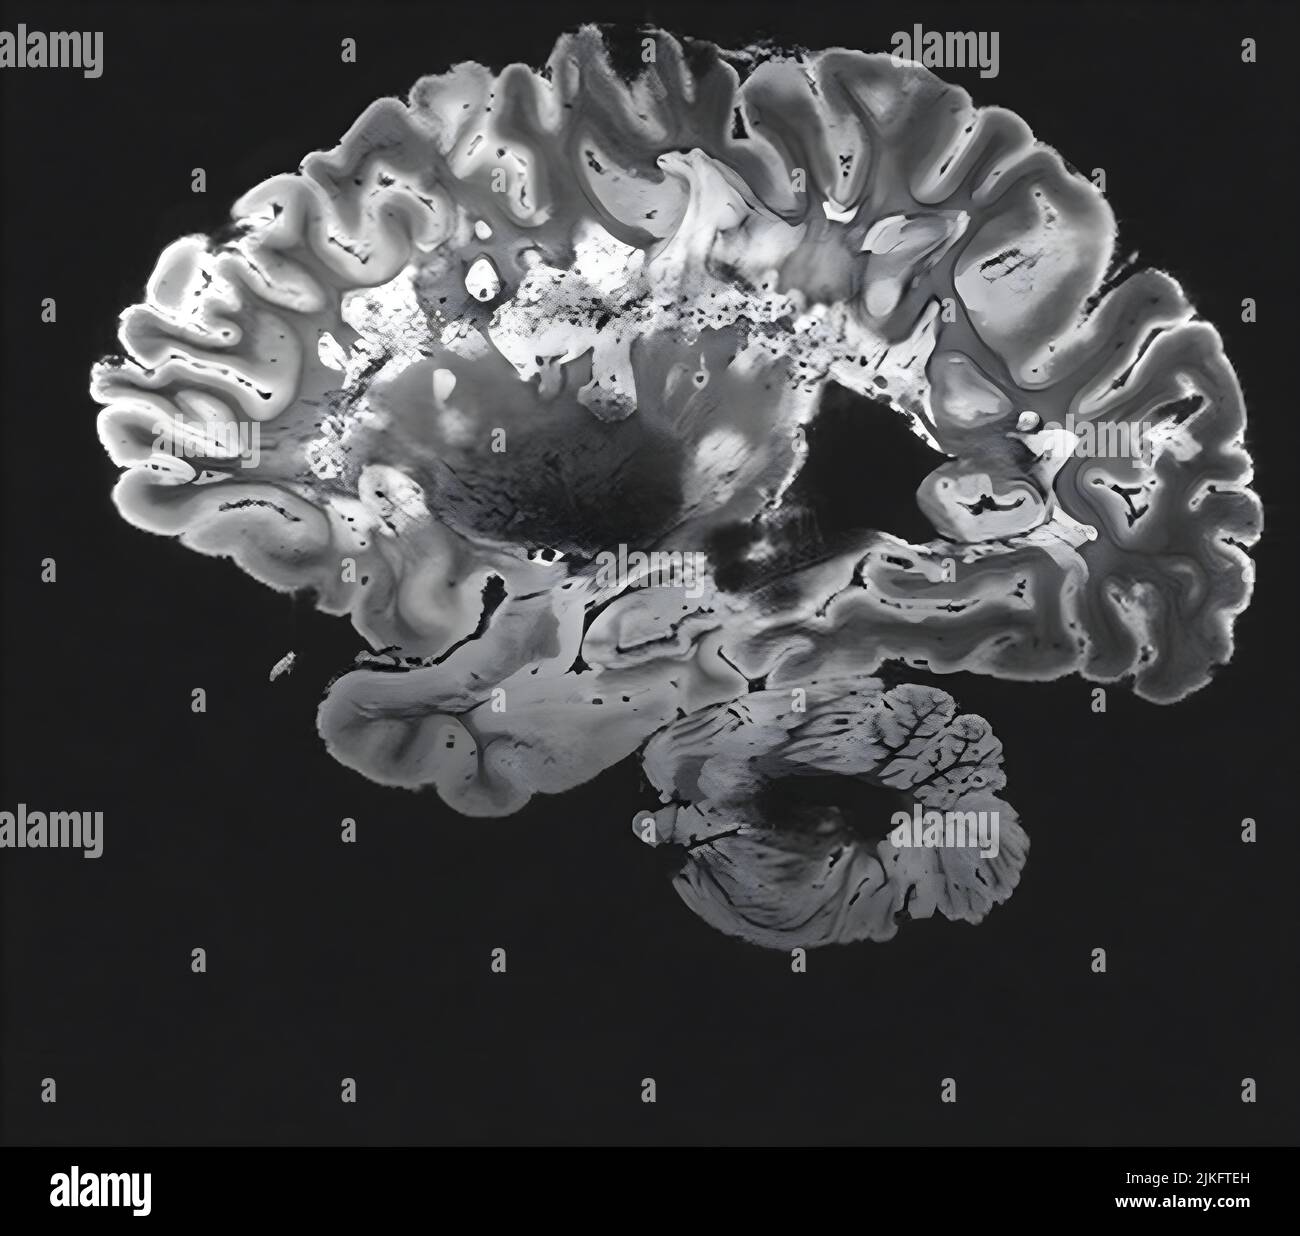 Dies ist ein pseudo-farbiger Bildausschnitt eines hochauflösenden Gradientenecho-MRT einer festen Gehirnhemisphäre einer Person mit multipler Sklerose. Stockfoto